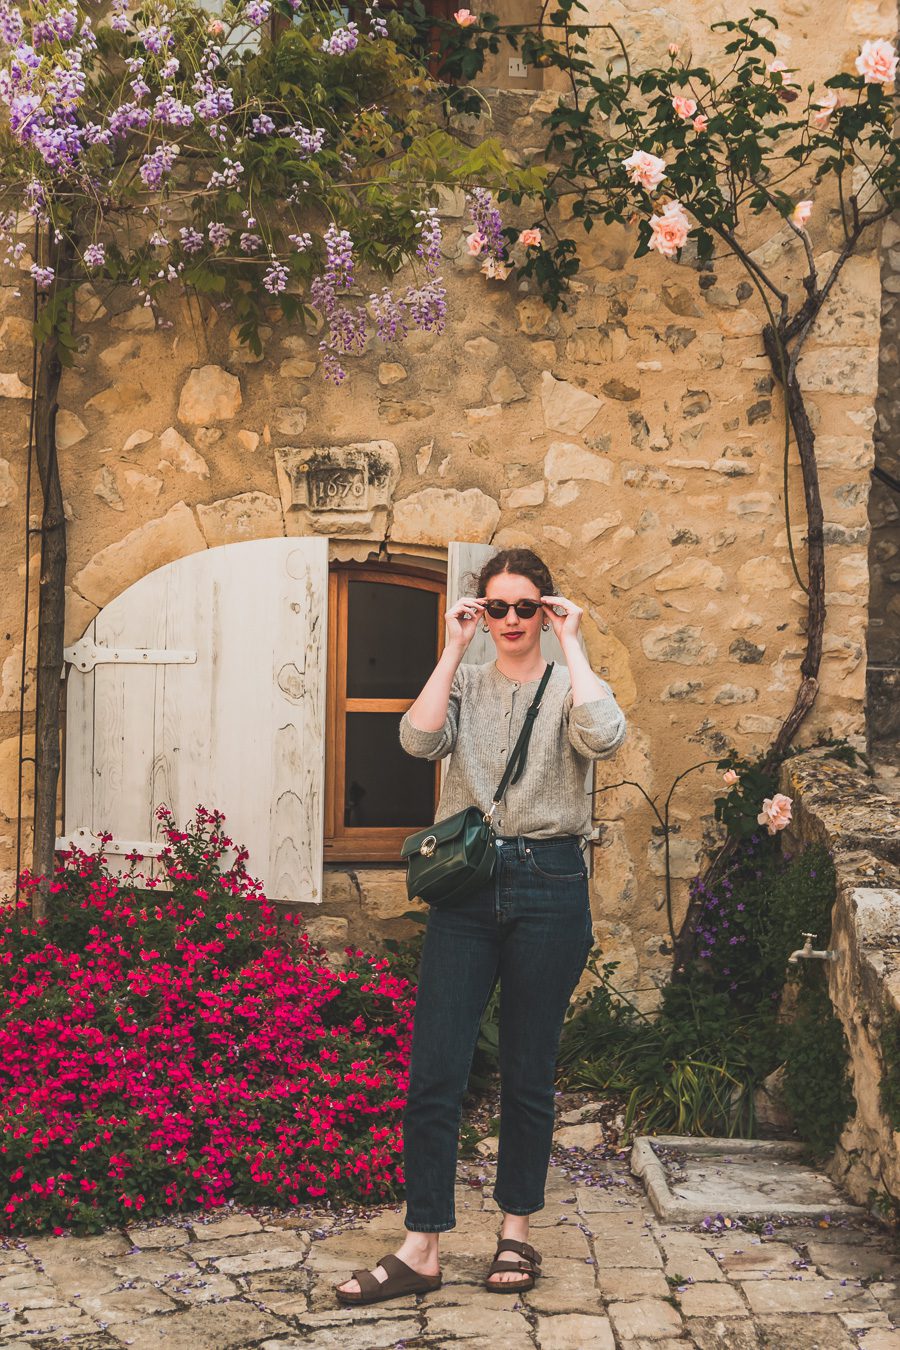 Face à la beauté spectaculaire de la campagne, la Drôme Provençale est une région dynamique du sud de la France. Des marchés animés de Nyons aux villages de montagne de Crest, Buis les Baronnies et Grignan, en passant par les élégants villages de Valréas, Suze la Rousse et Saint-Paul-Trois-Chateaux, la région regorge de trésors culturels, de charmants hameaux et vignobles luxuriants. Partez à la découverte des plus beaux endroits de la Drôme provençale lors d'un road trip en van.